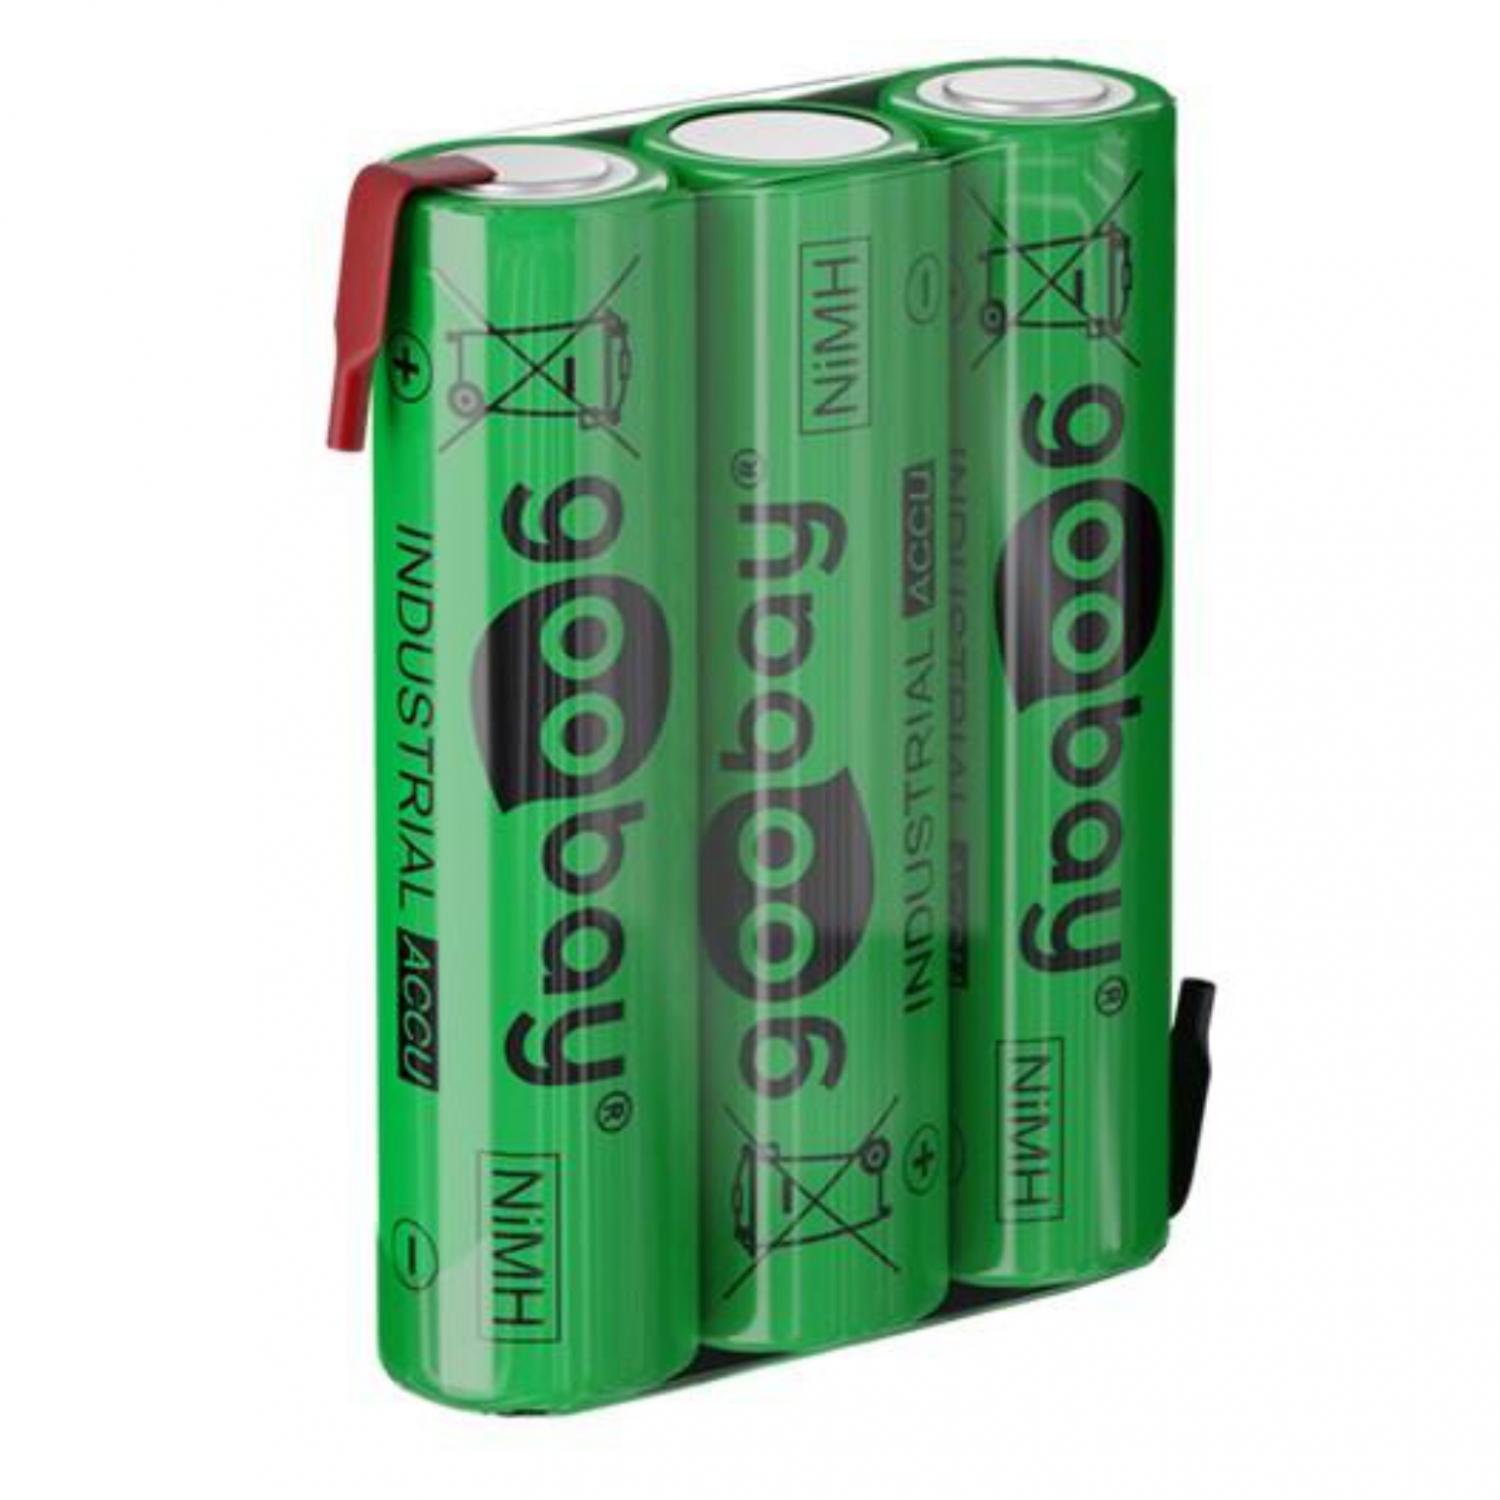 Openbaren Mok Warmte Speciale batterijen Winkel Online - Goedkoopste Speciale batterijen